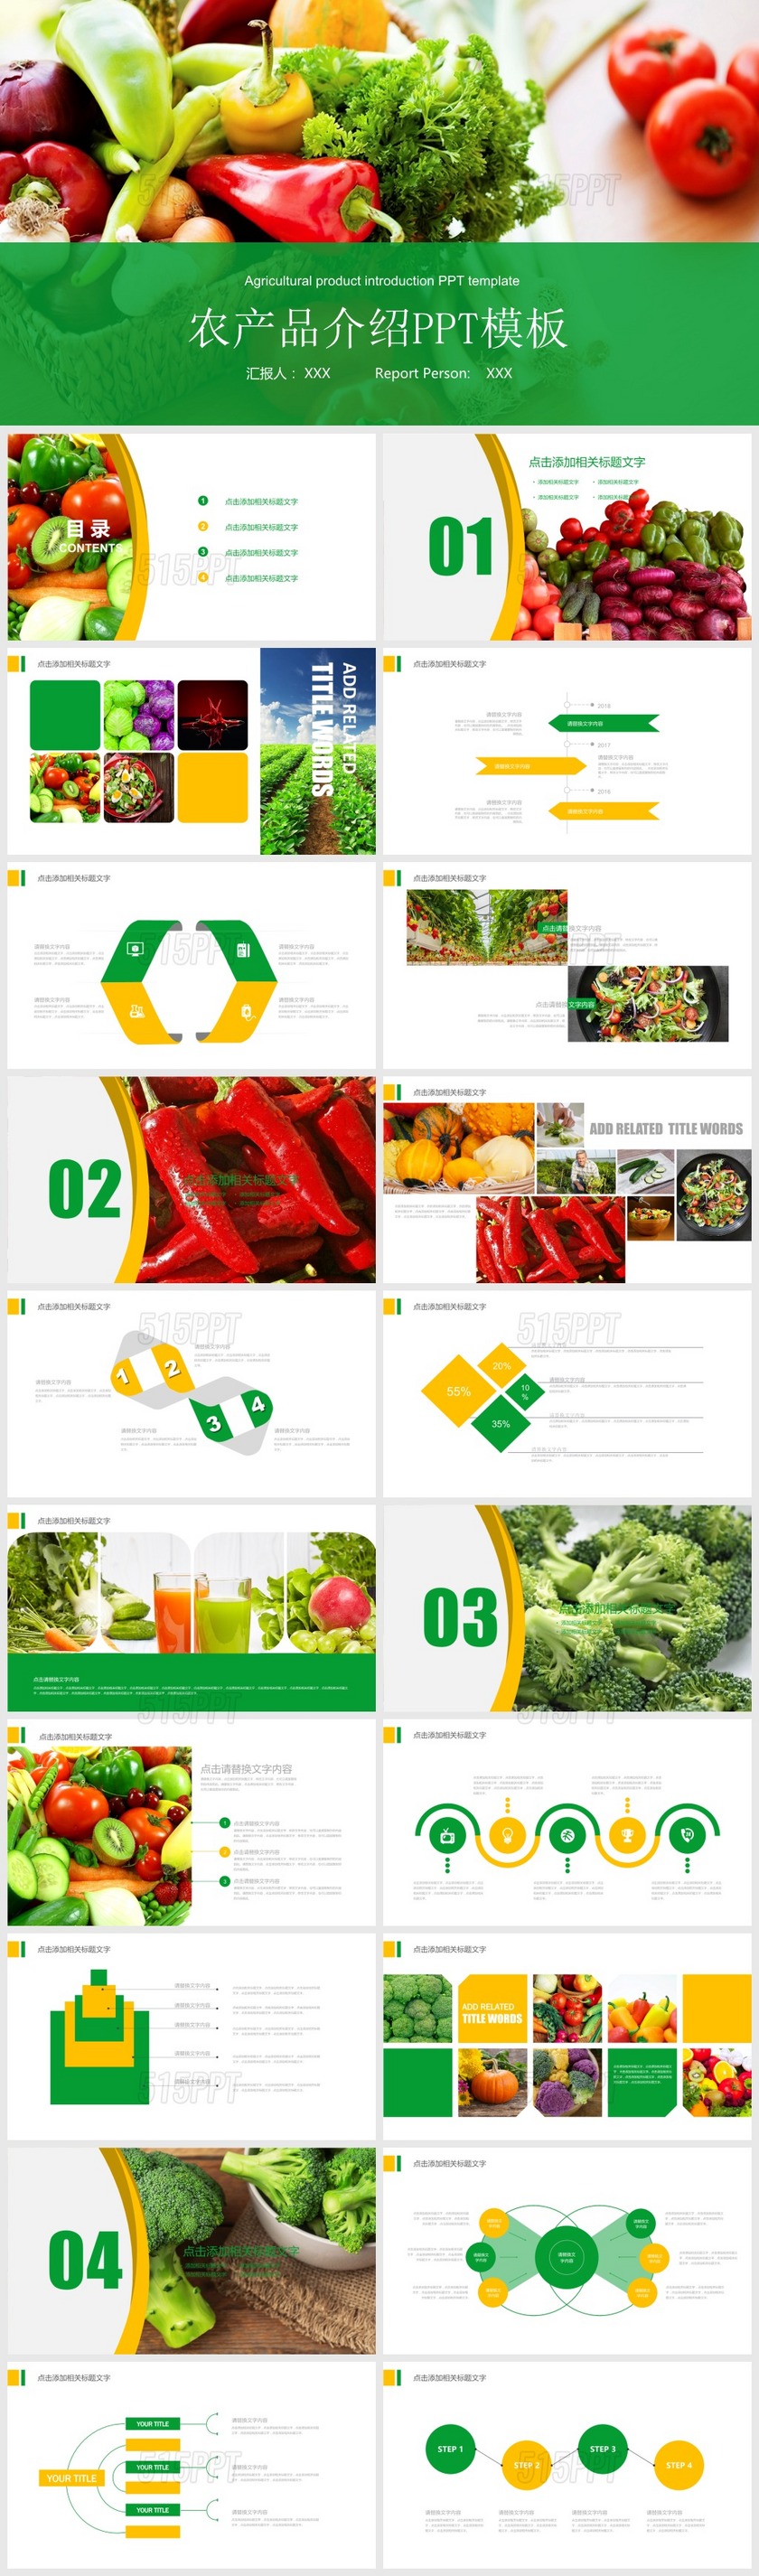 绿色蔬菜农产品介绍宣传推广PPT模板